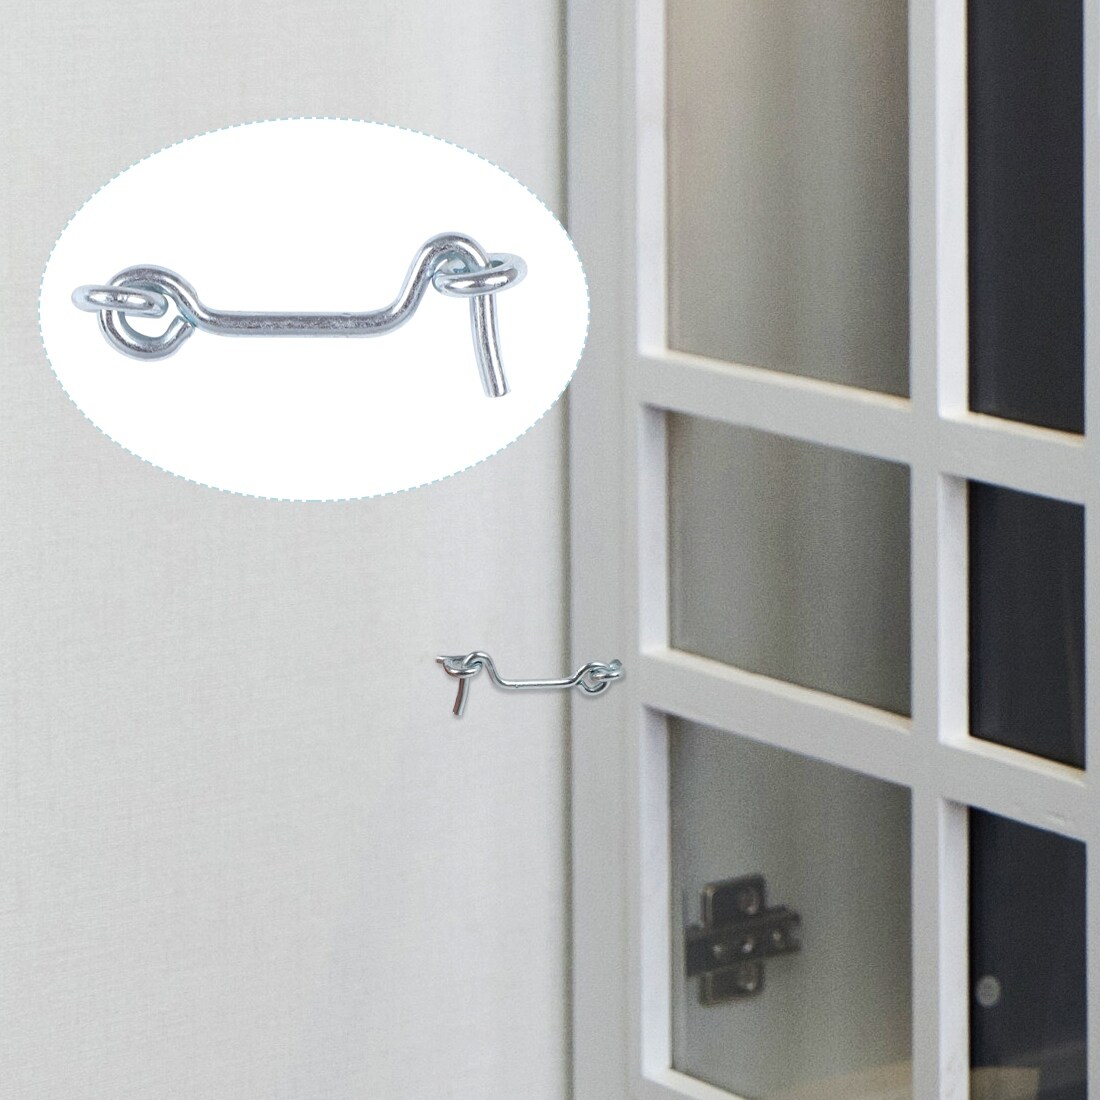 2Cabin Hooks Eye Latch Privacy Hook w Screws for Window Slide Barn Door  4pcs - Silver - 2 x 0.83 x 0.12(L*W*D) - Bed Bath & Beyond - 28765636